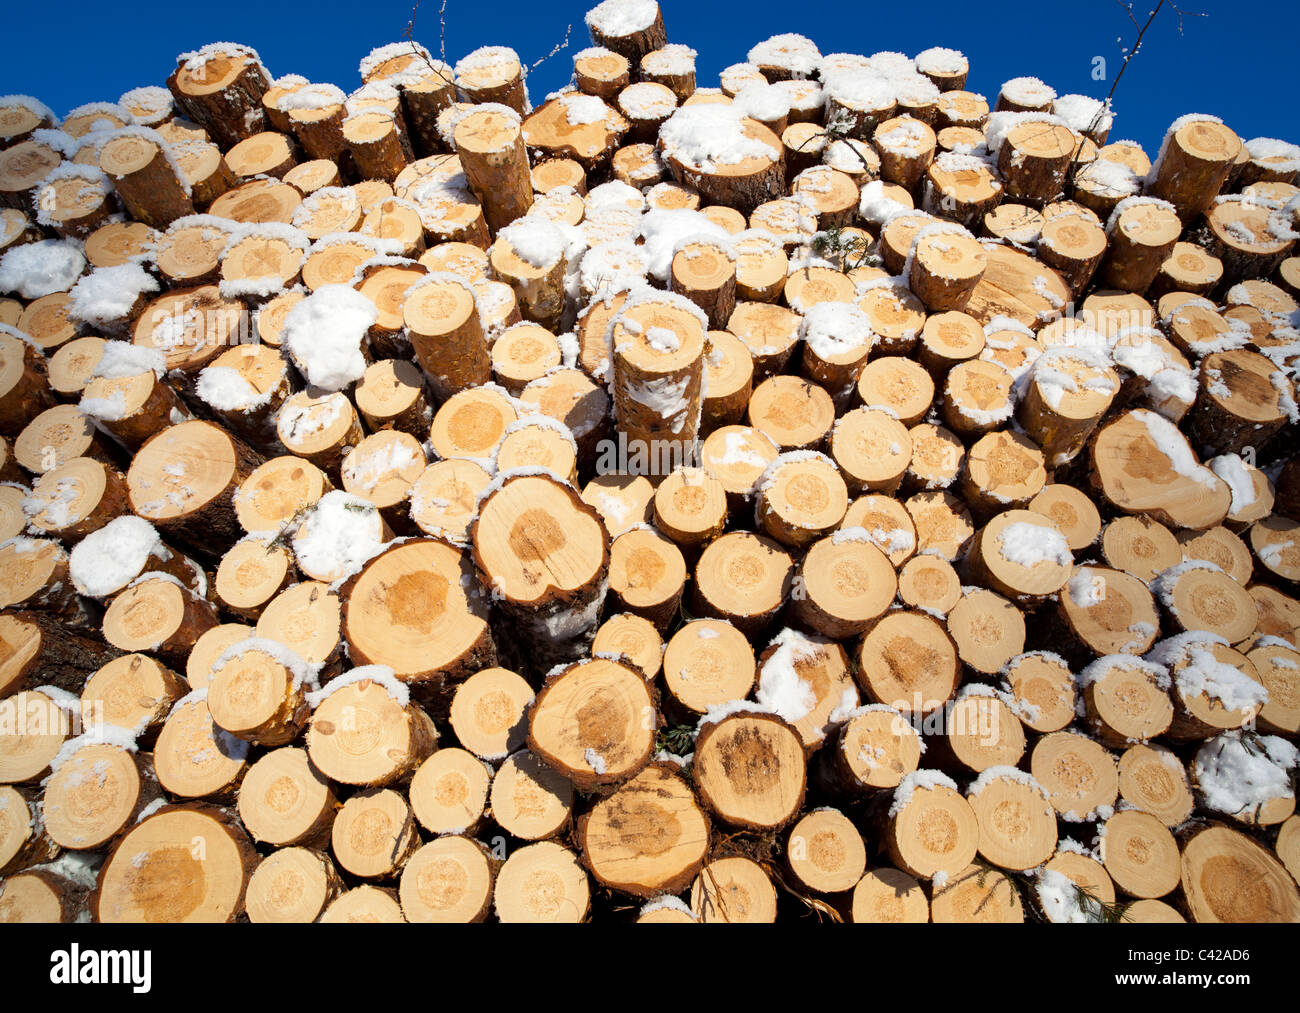 Gros plan d'une pile de grumes de pin fraîchement coupées ( pinus sylvestris ) , Finlande Banque D'Images